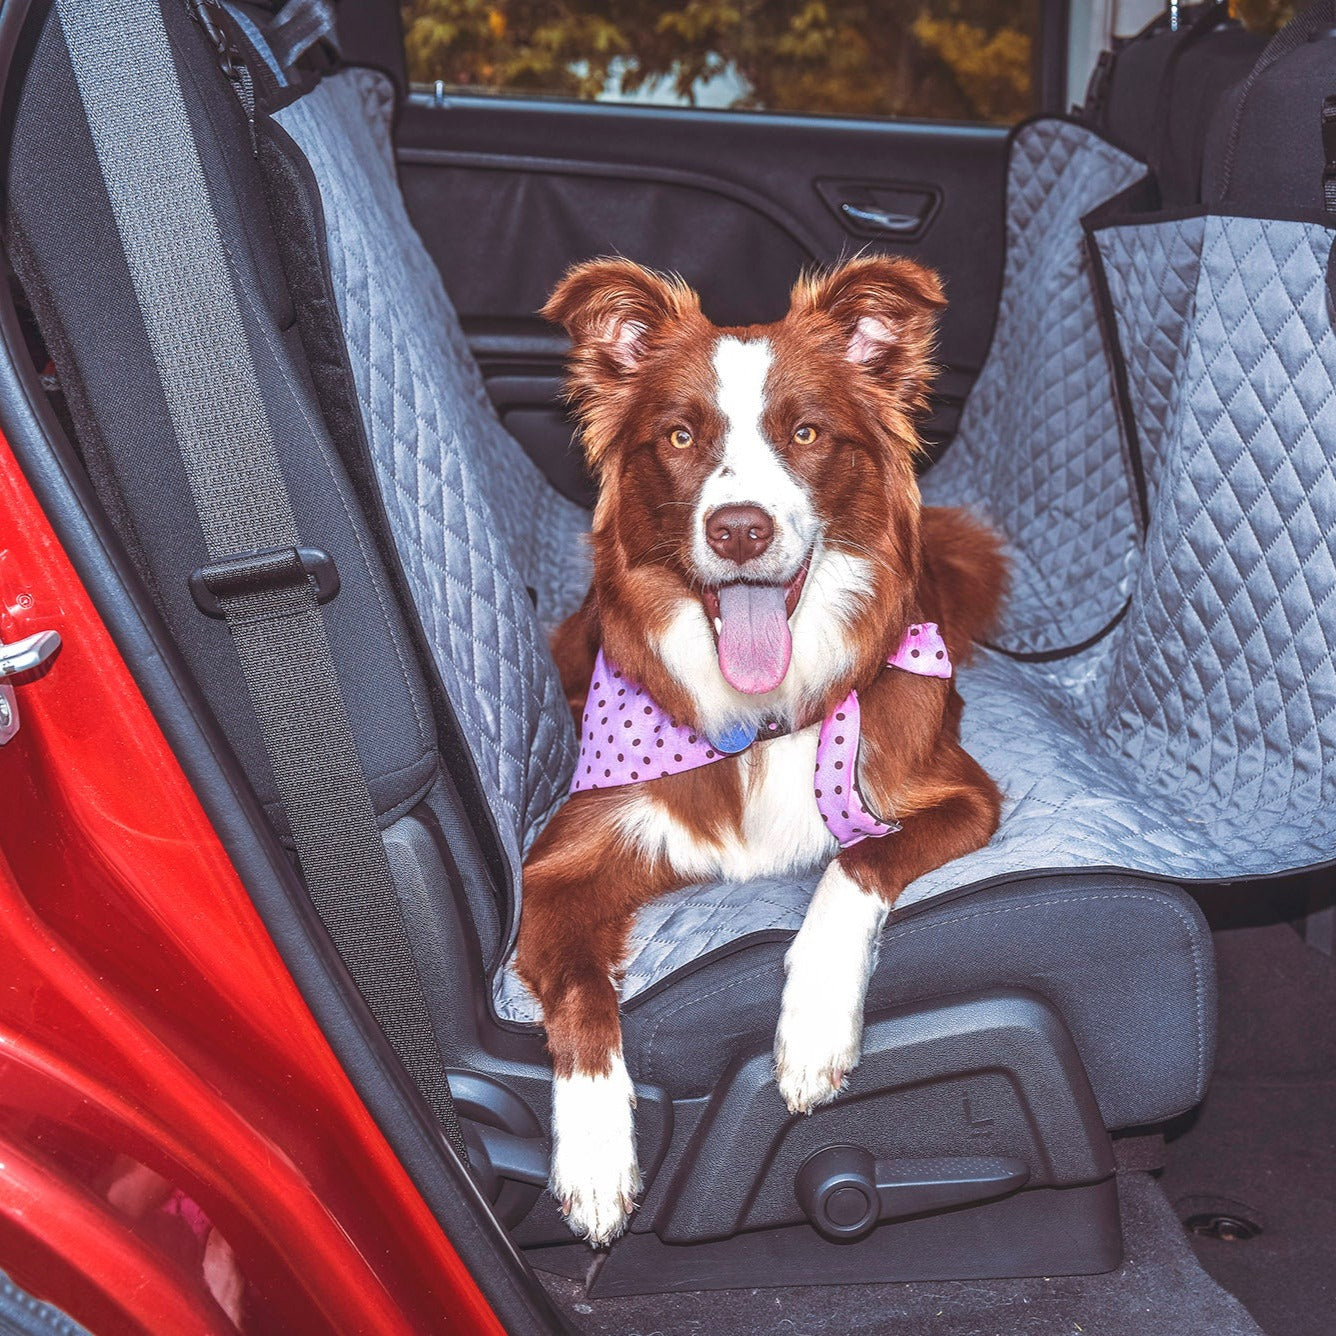 Protector para transportar mascotas en el coche Pack 2 unidades